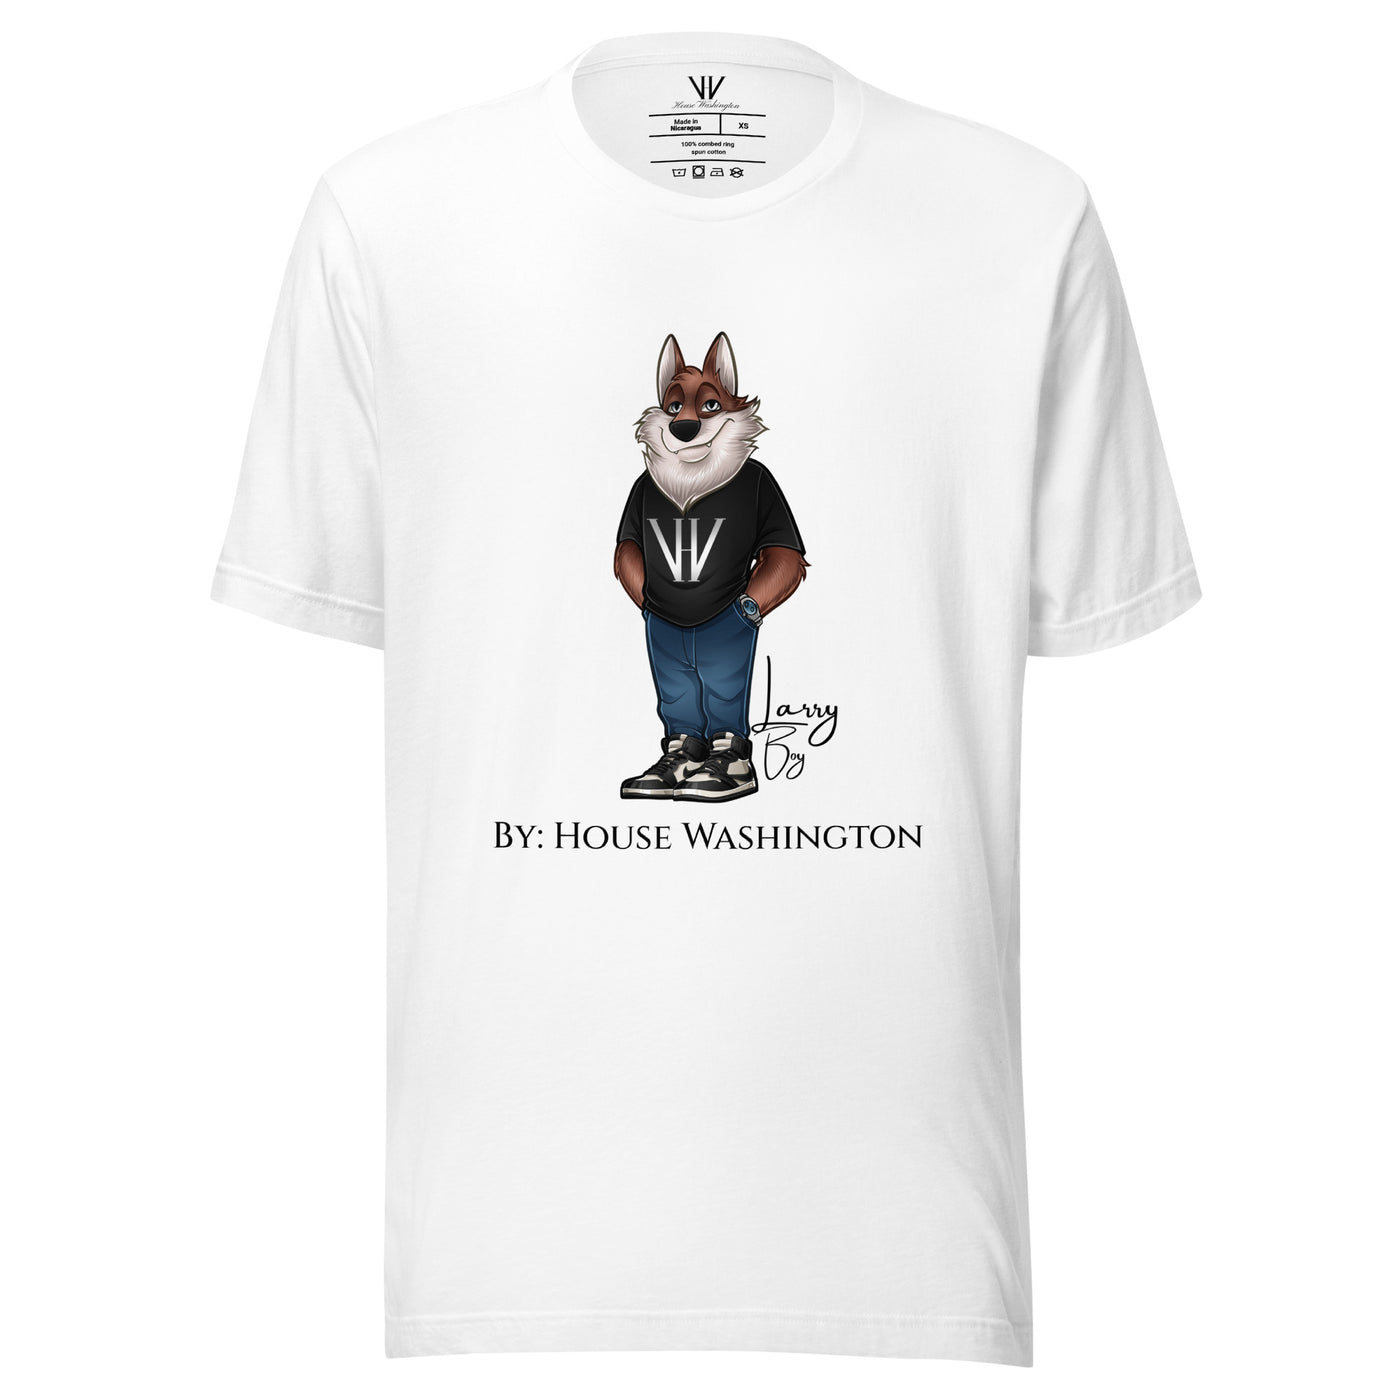 House Washington - "Larry Boy" - T-Shirt - White